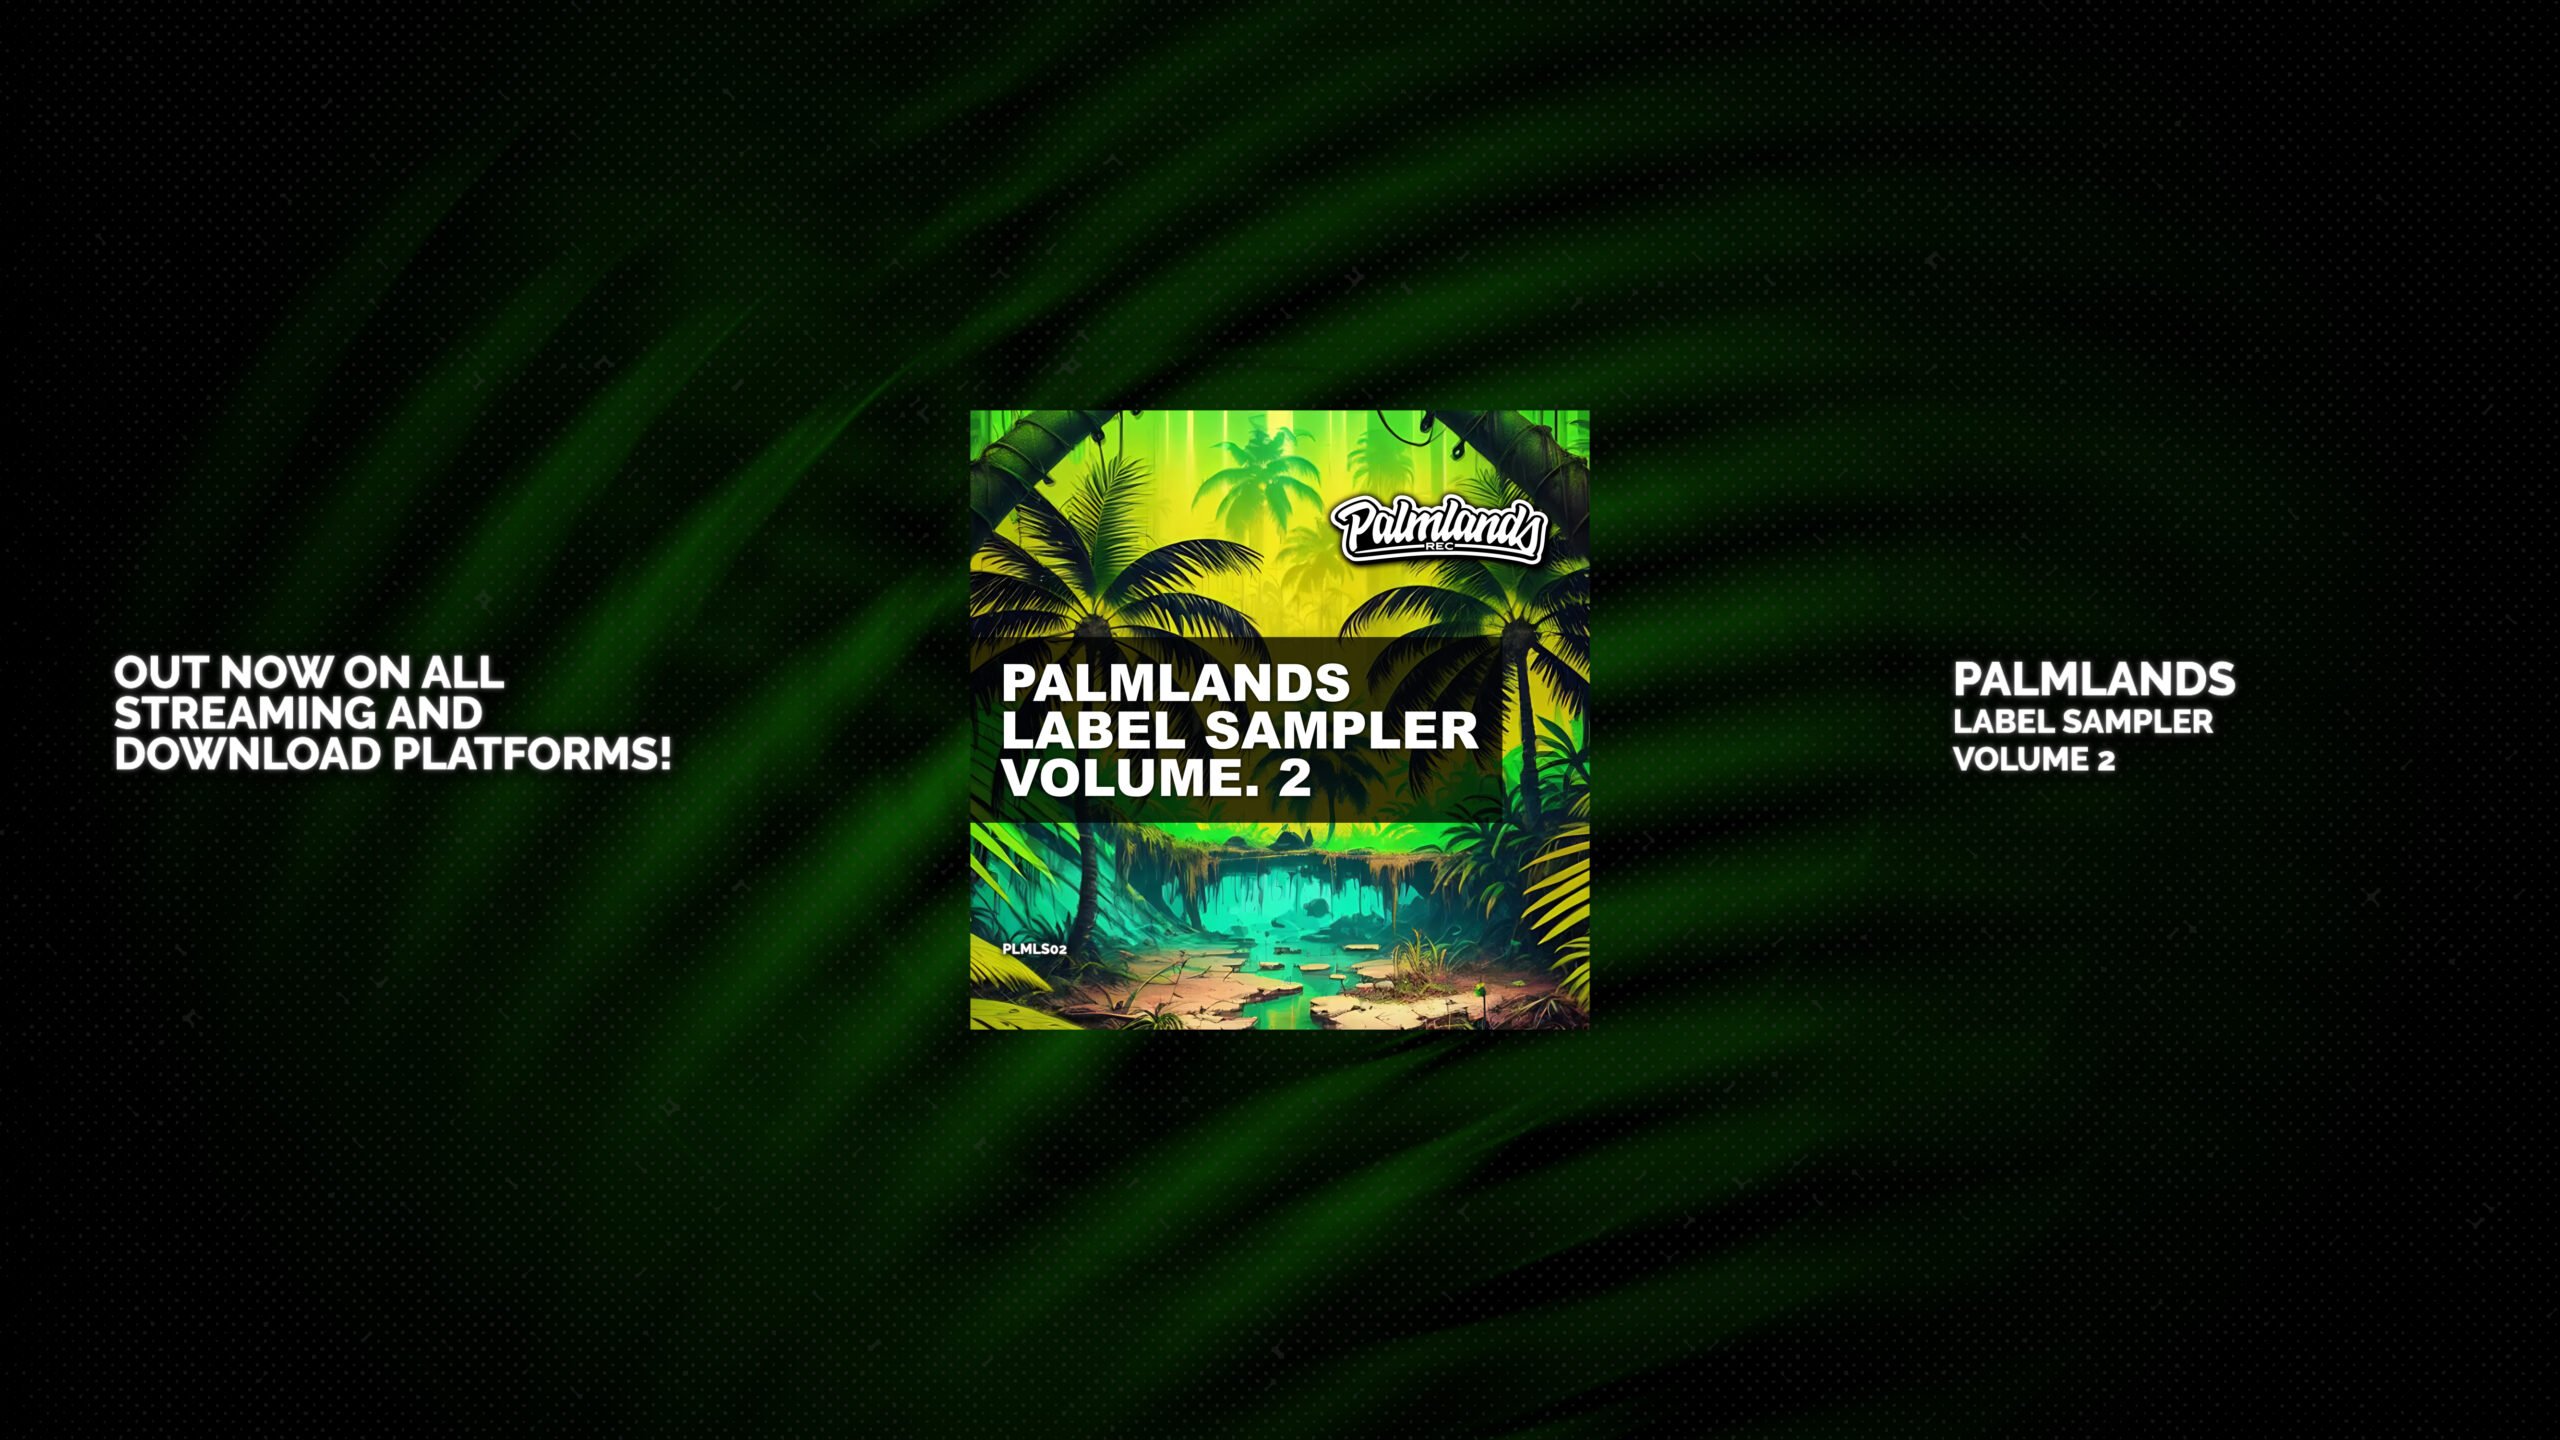 Palmlands Label Sampler Volume 2